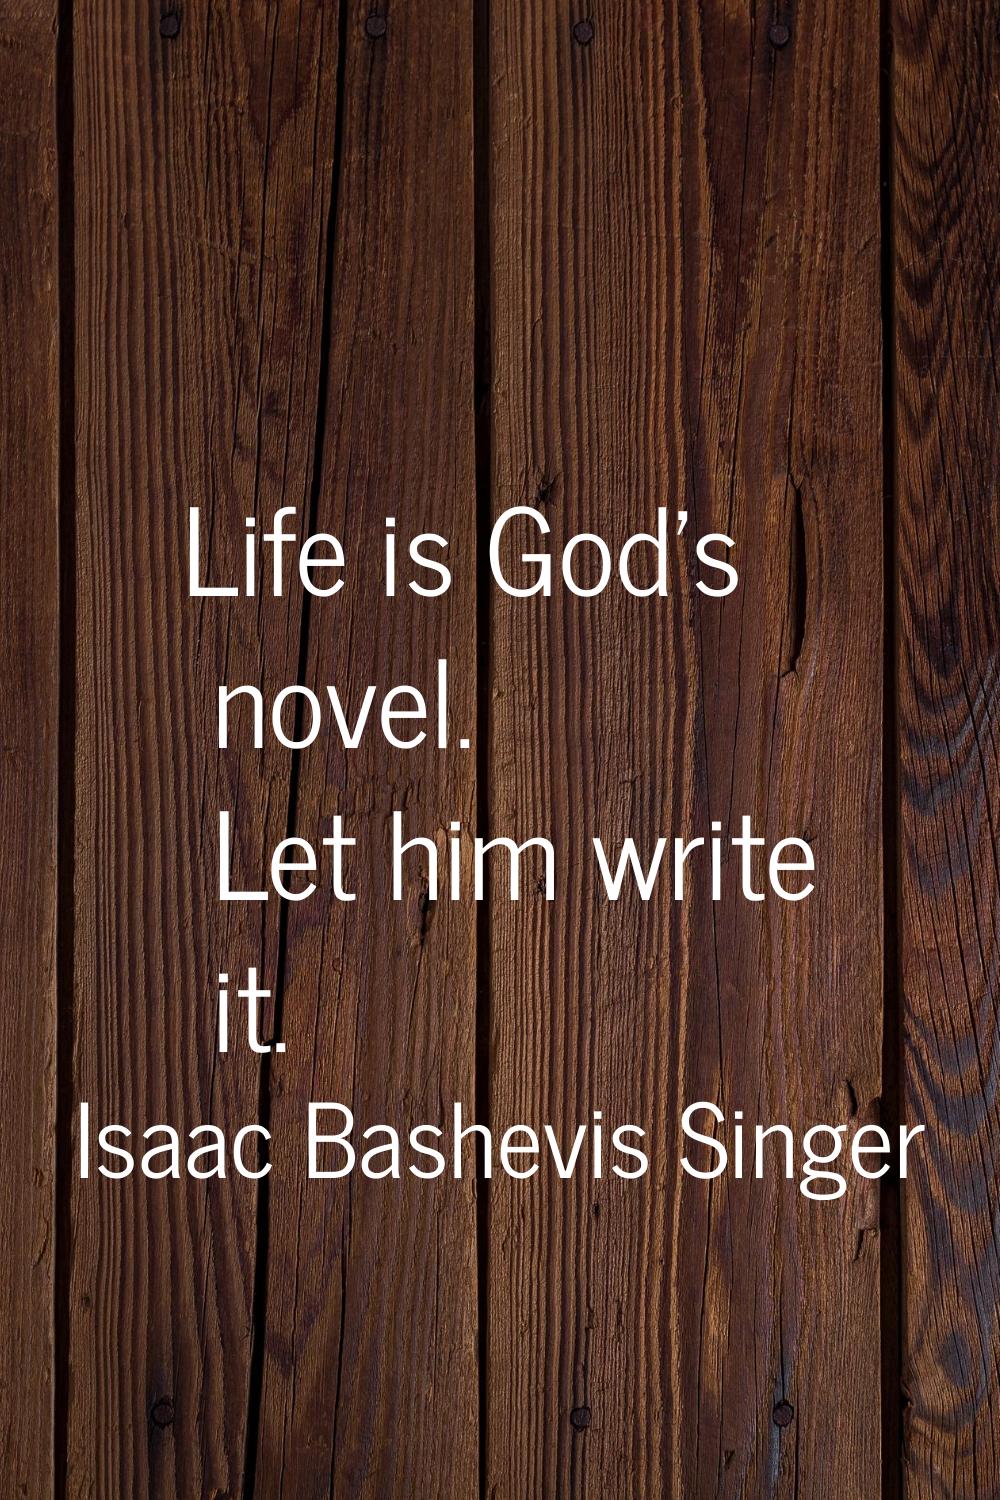 Life is God's novel. Let him write it.